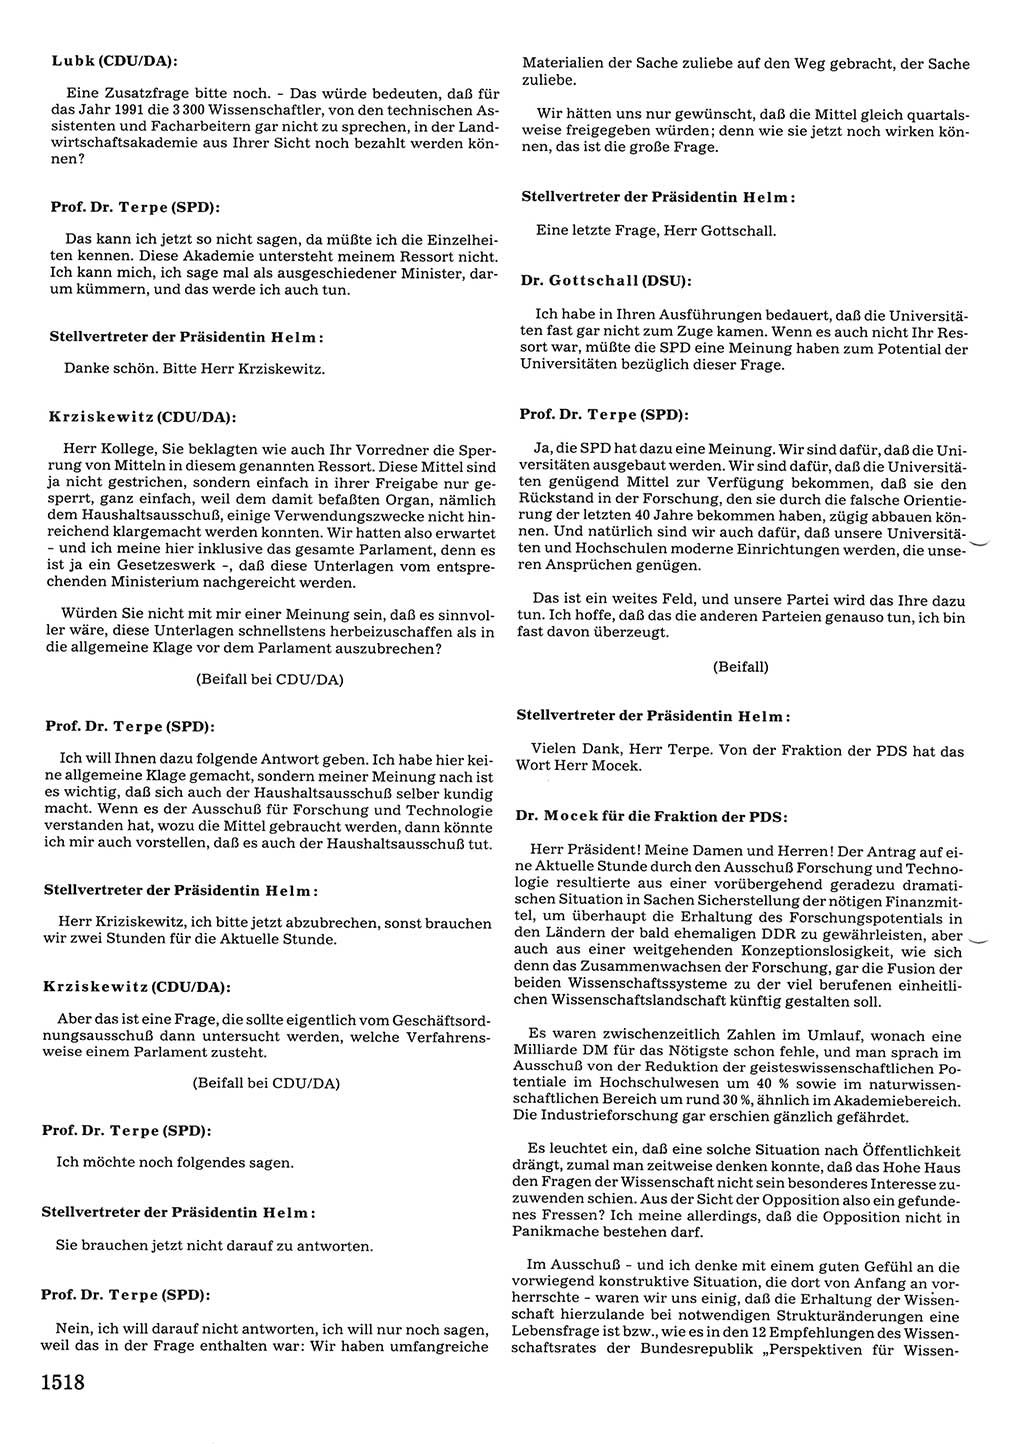 Tagungen der Volkskammer (VK) der Deutschen Demokratischen Republik (DDR), 10. Wahlperiode 1990, Seite 1518 (VK. DDR 10. WP. 1990, Prot. Tg. 1-38, 5.4.-2.10.1990, S. 1518)